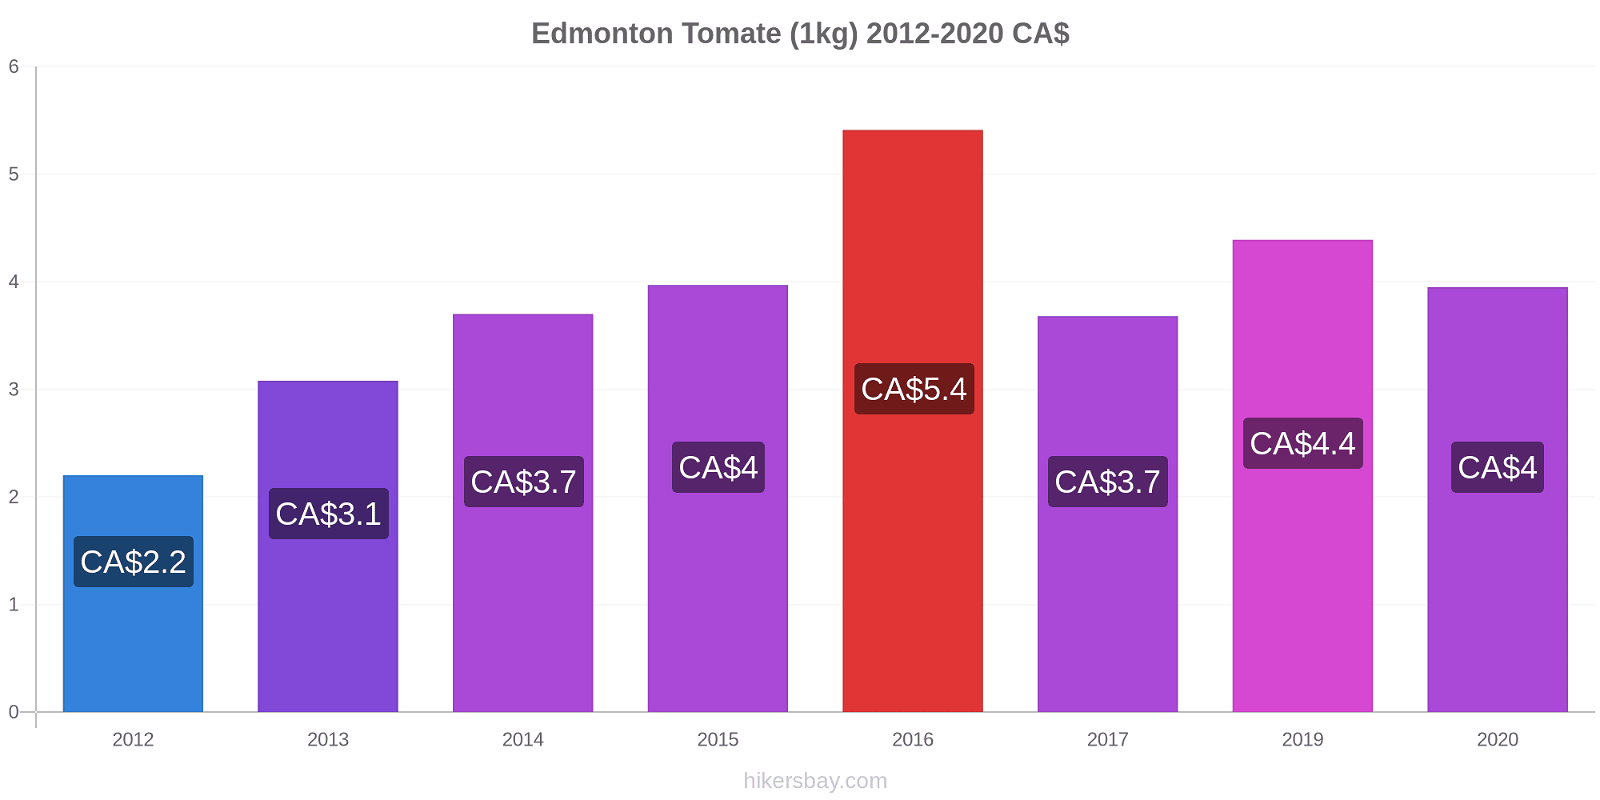 Edmonton changements de prix Tomate (1kg) hikersbay.com